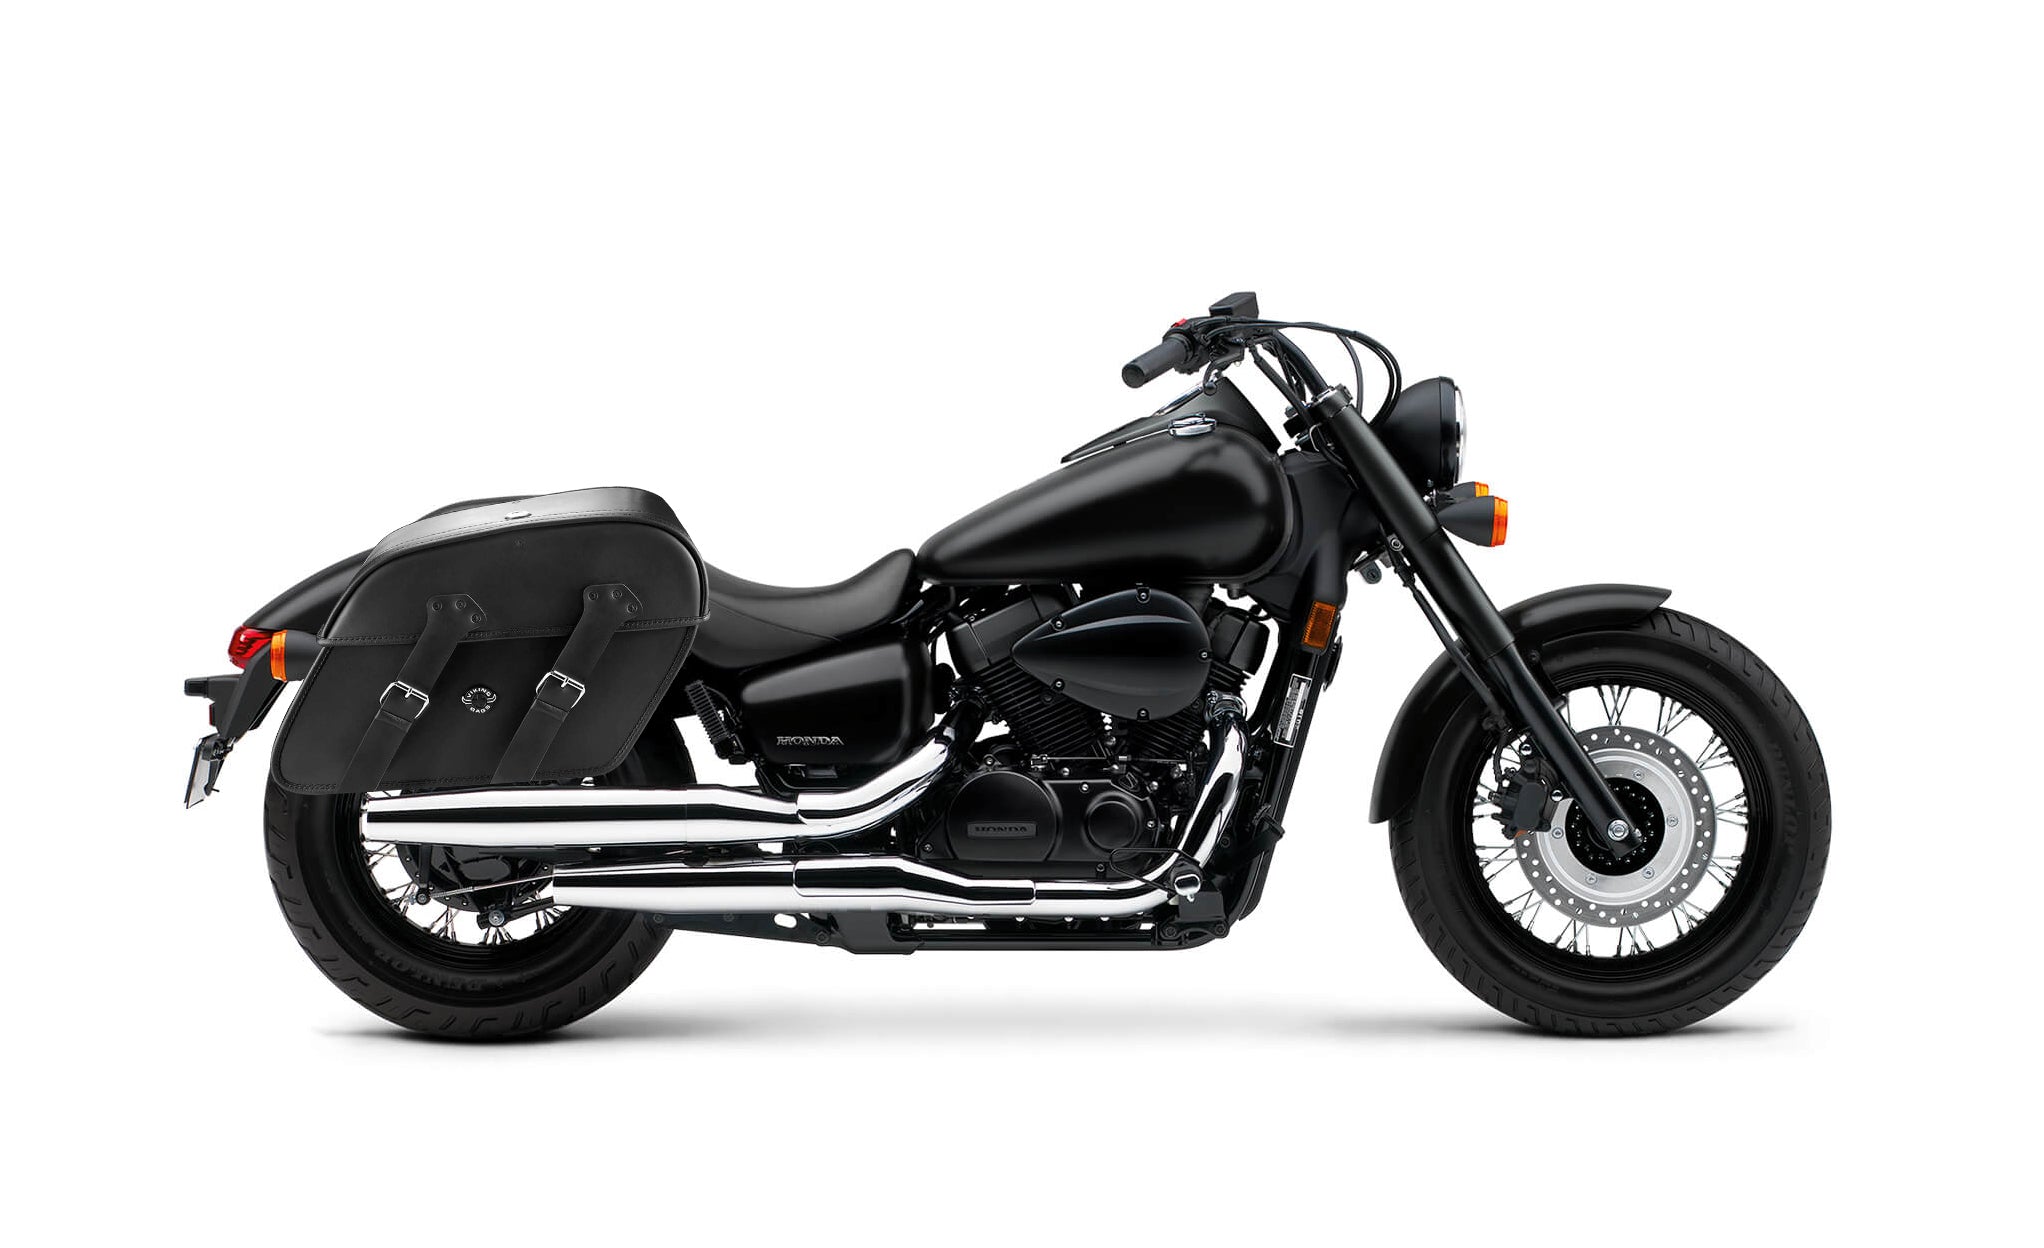 Viking Raven Extra Large Honda Shadow 750 Phantom Shock Cut Out Leather Motorcycle Saddlebags on Bike Photo @expand